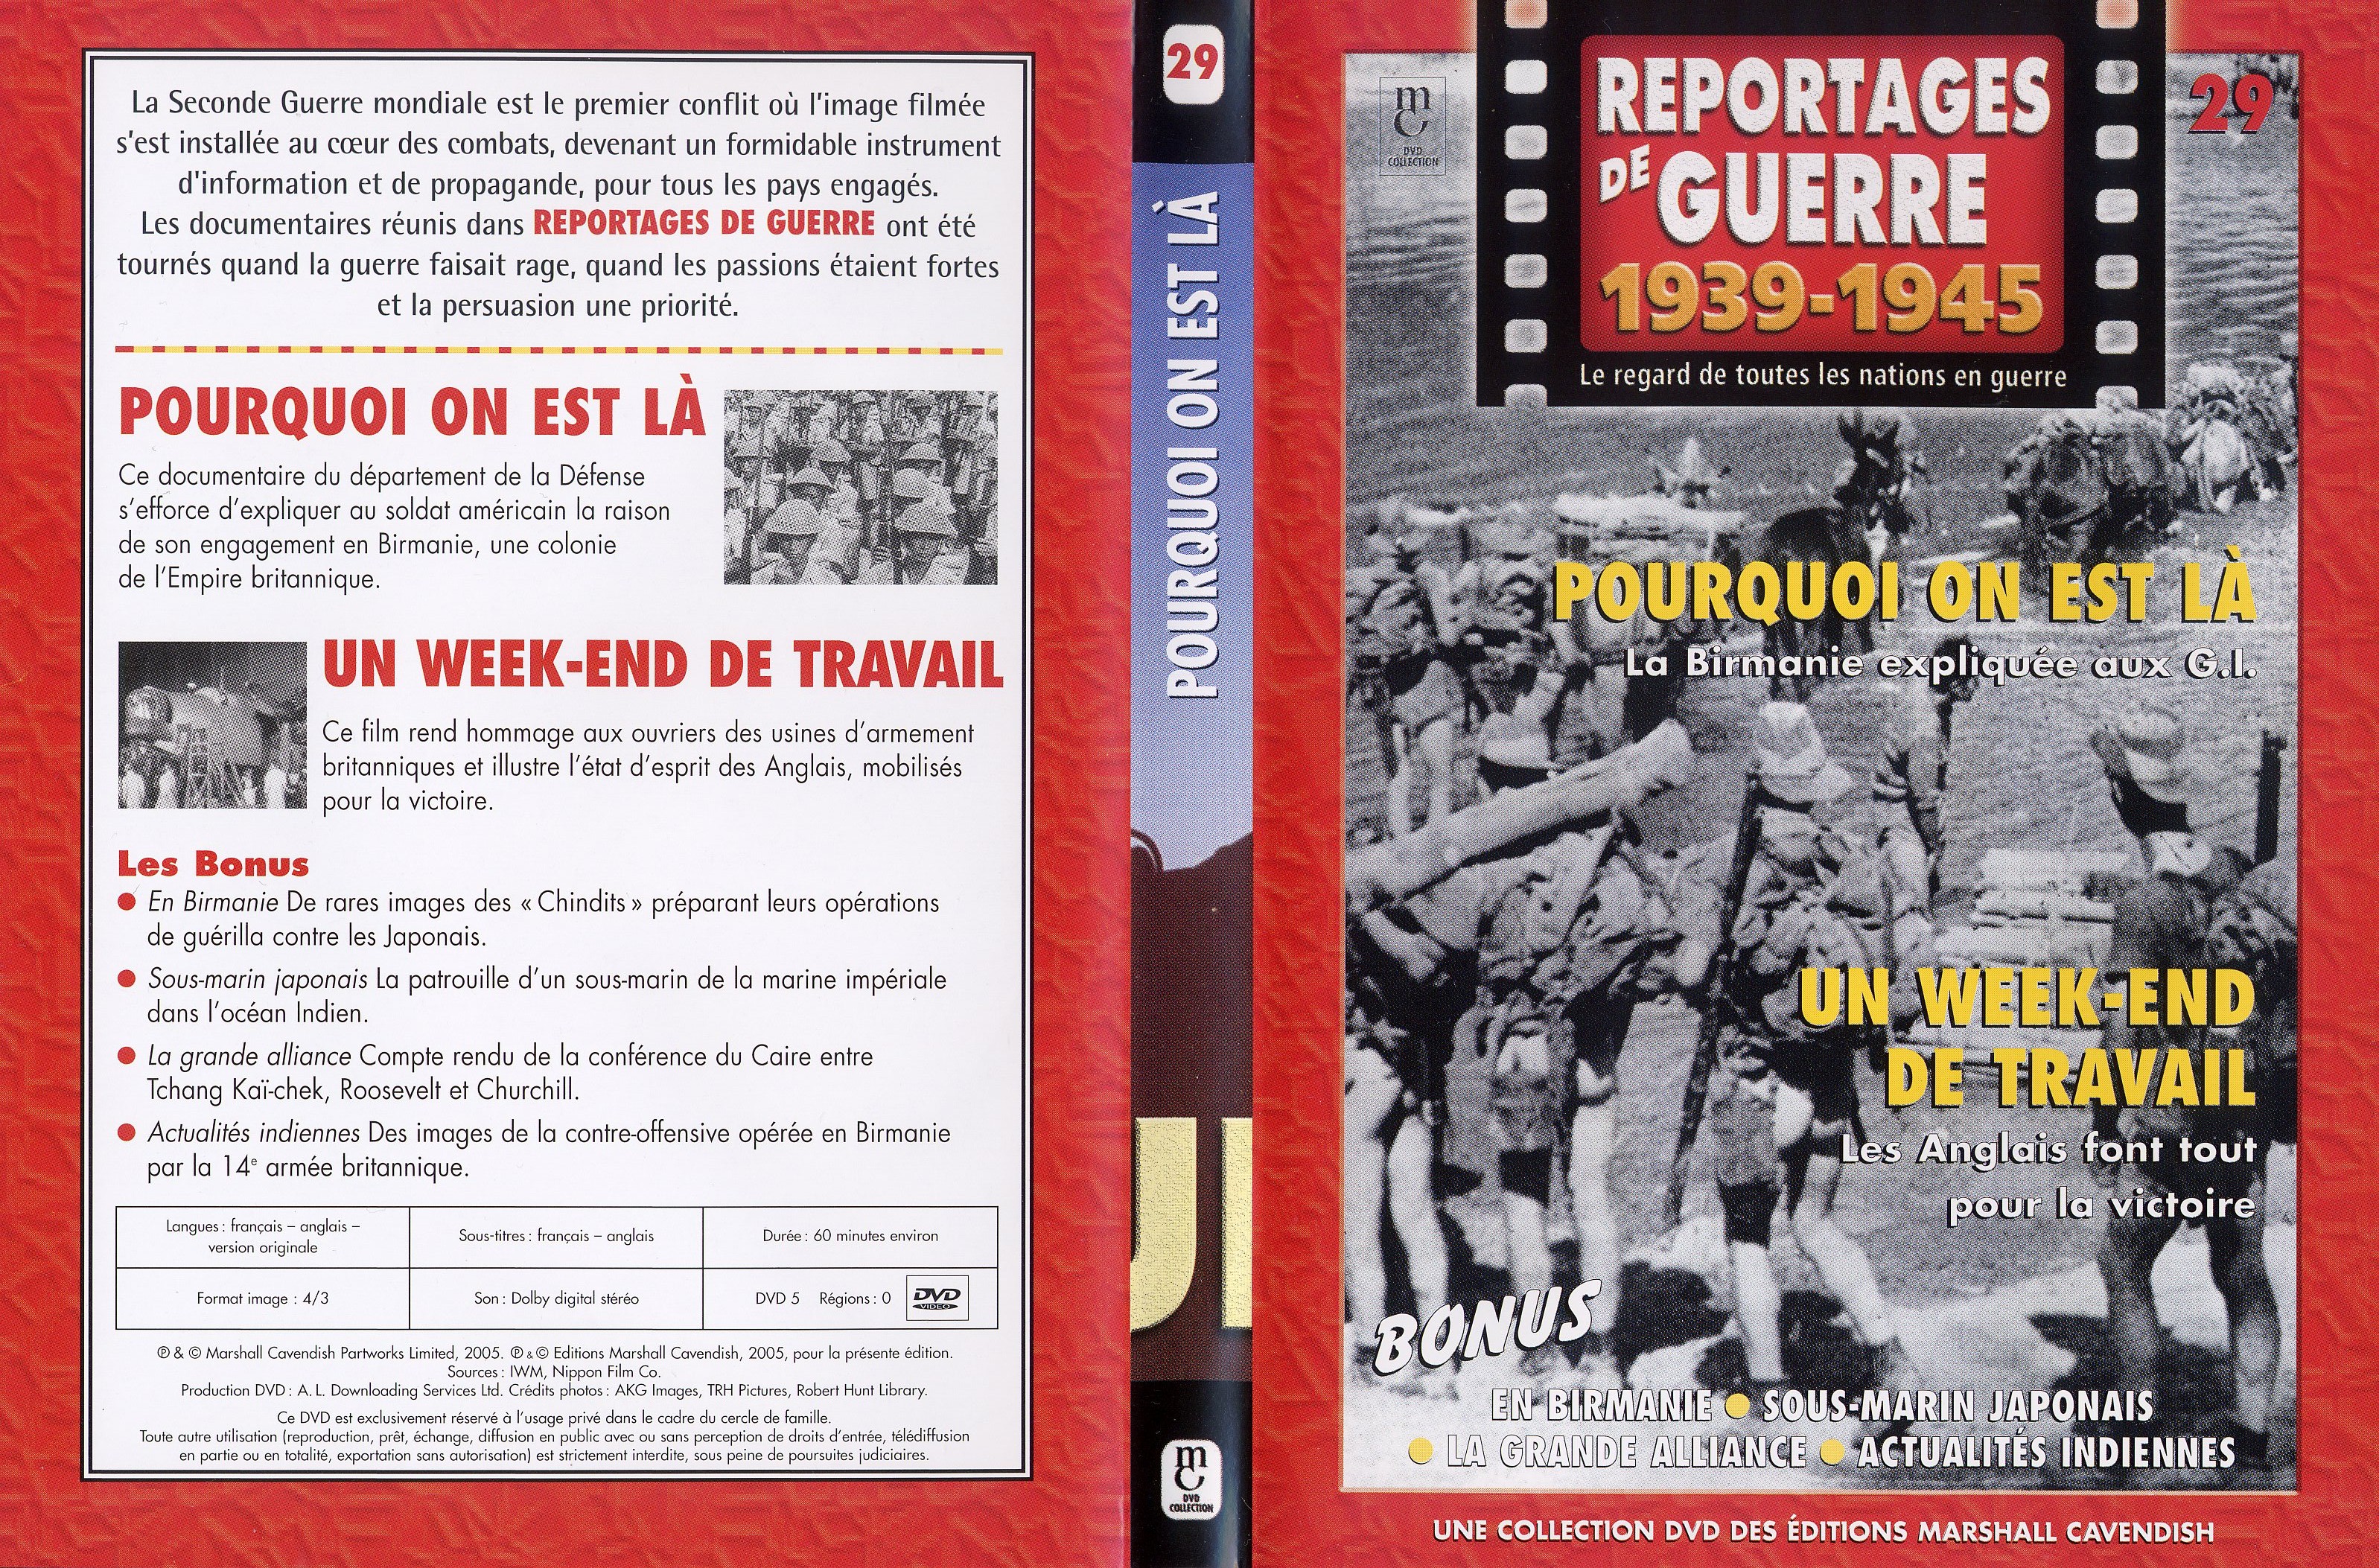 Jaquette DVD Reportages de guerre vol 29